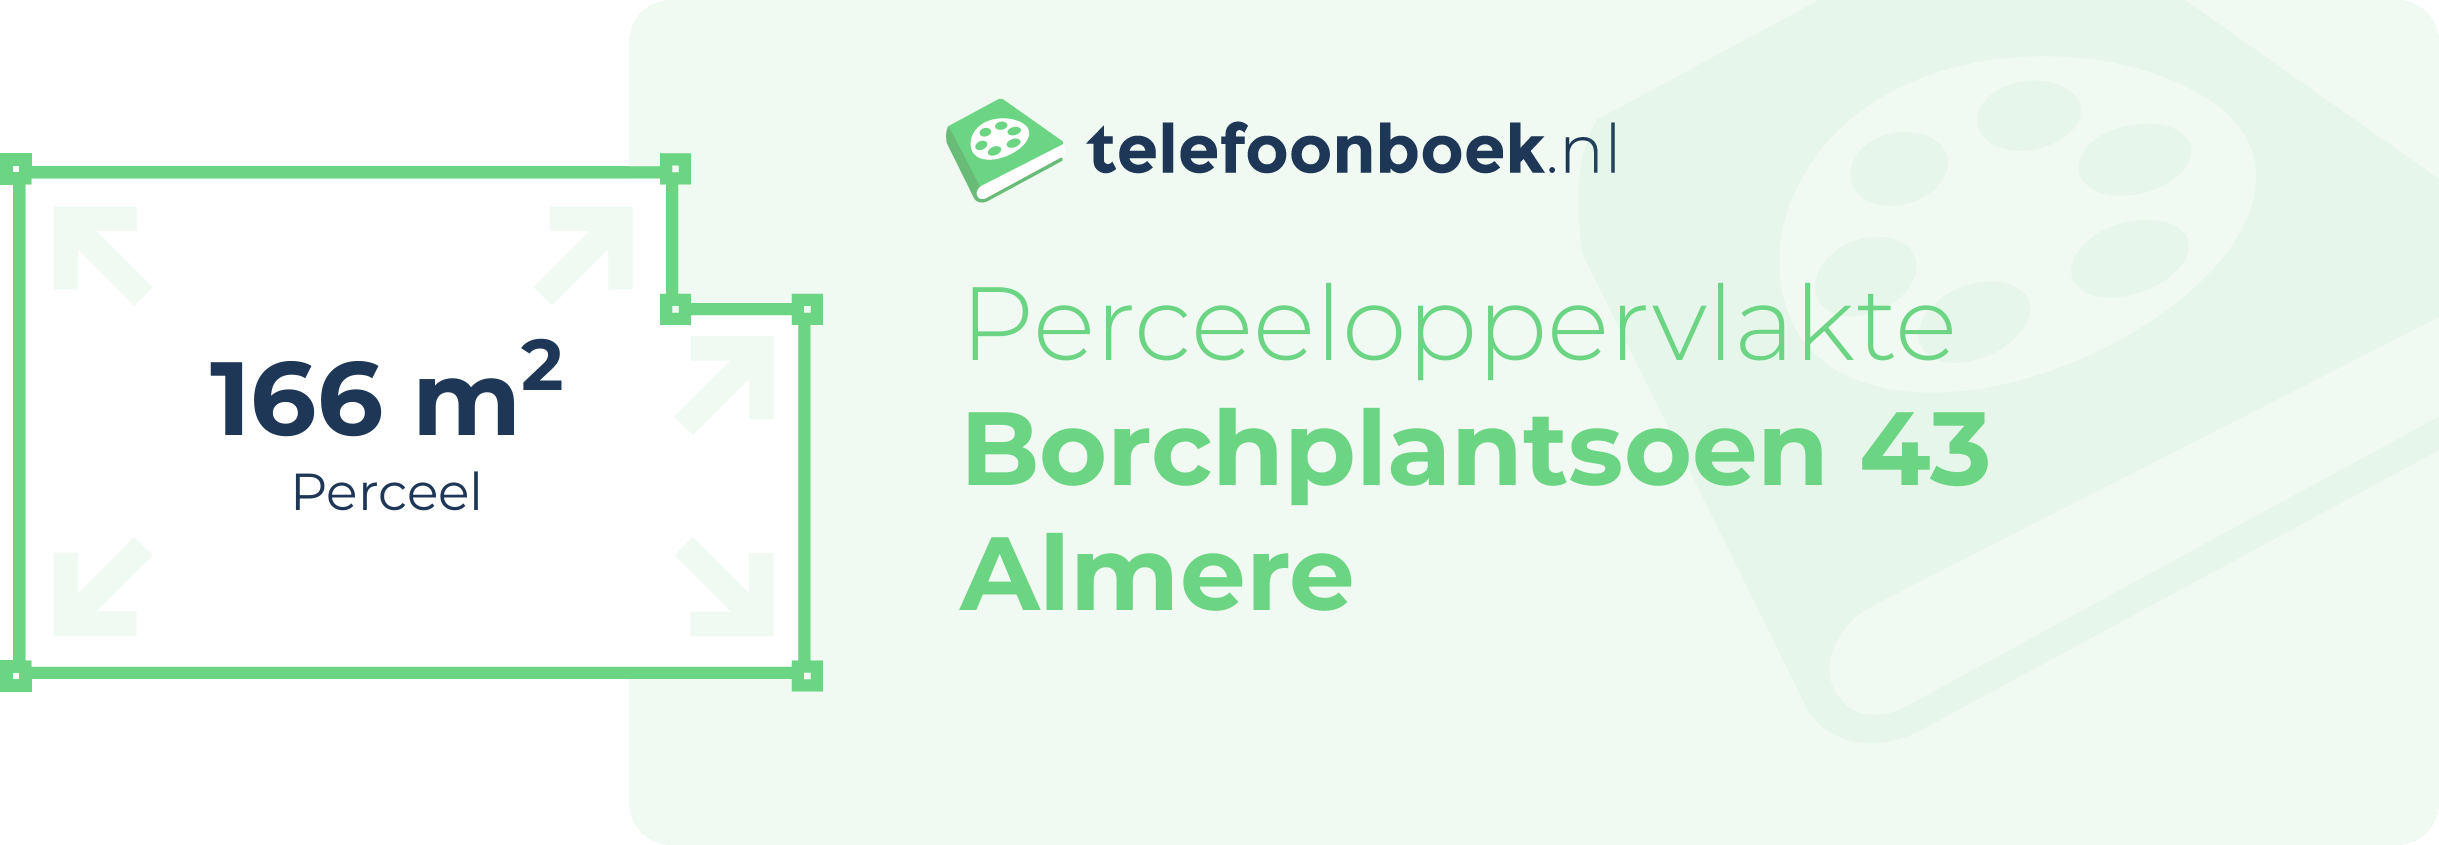 Perceeloppervlakte Borchplantsoen 43 Almere